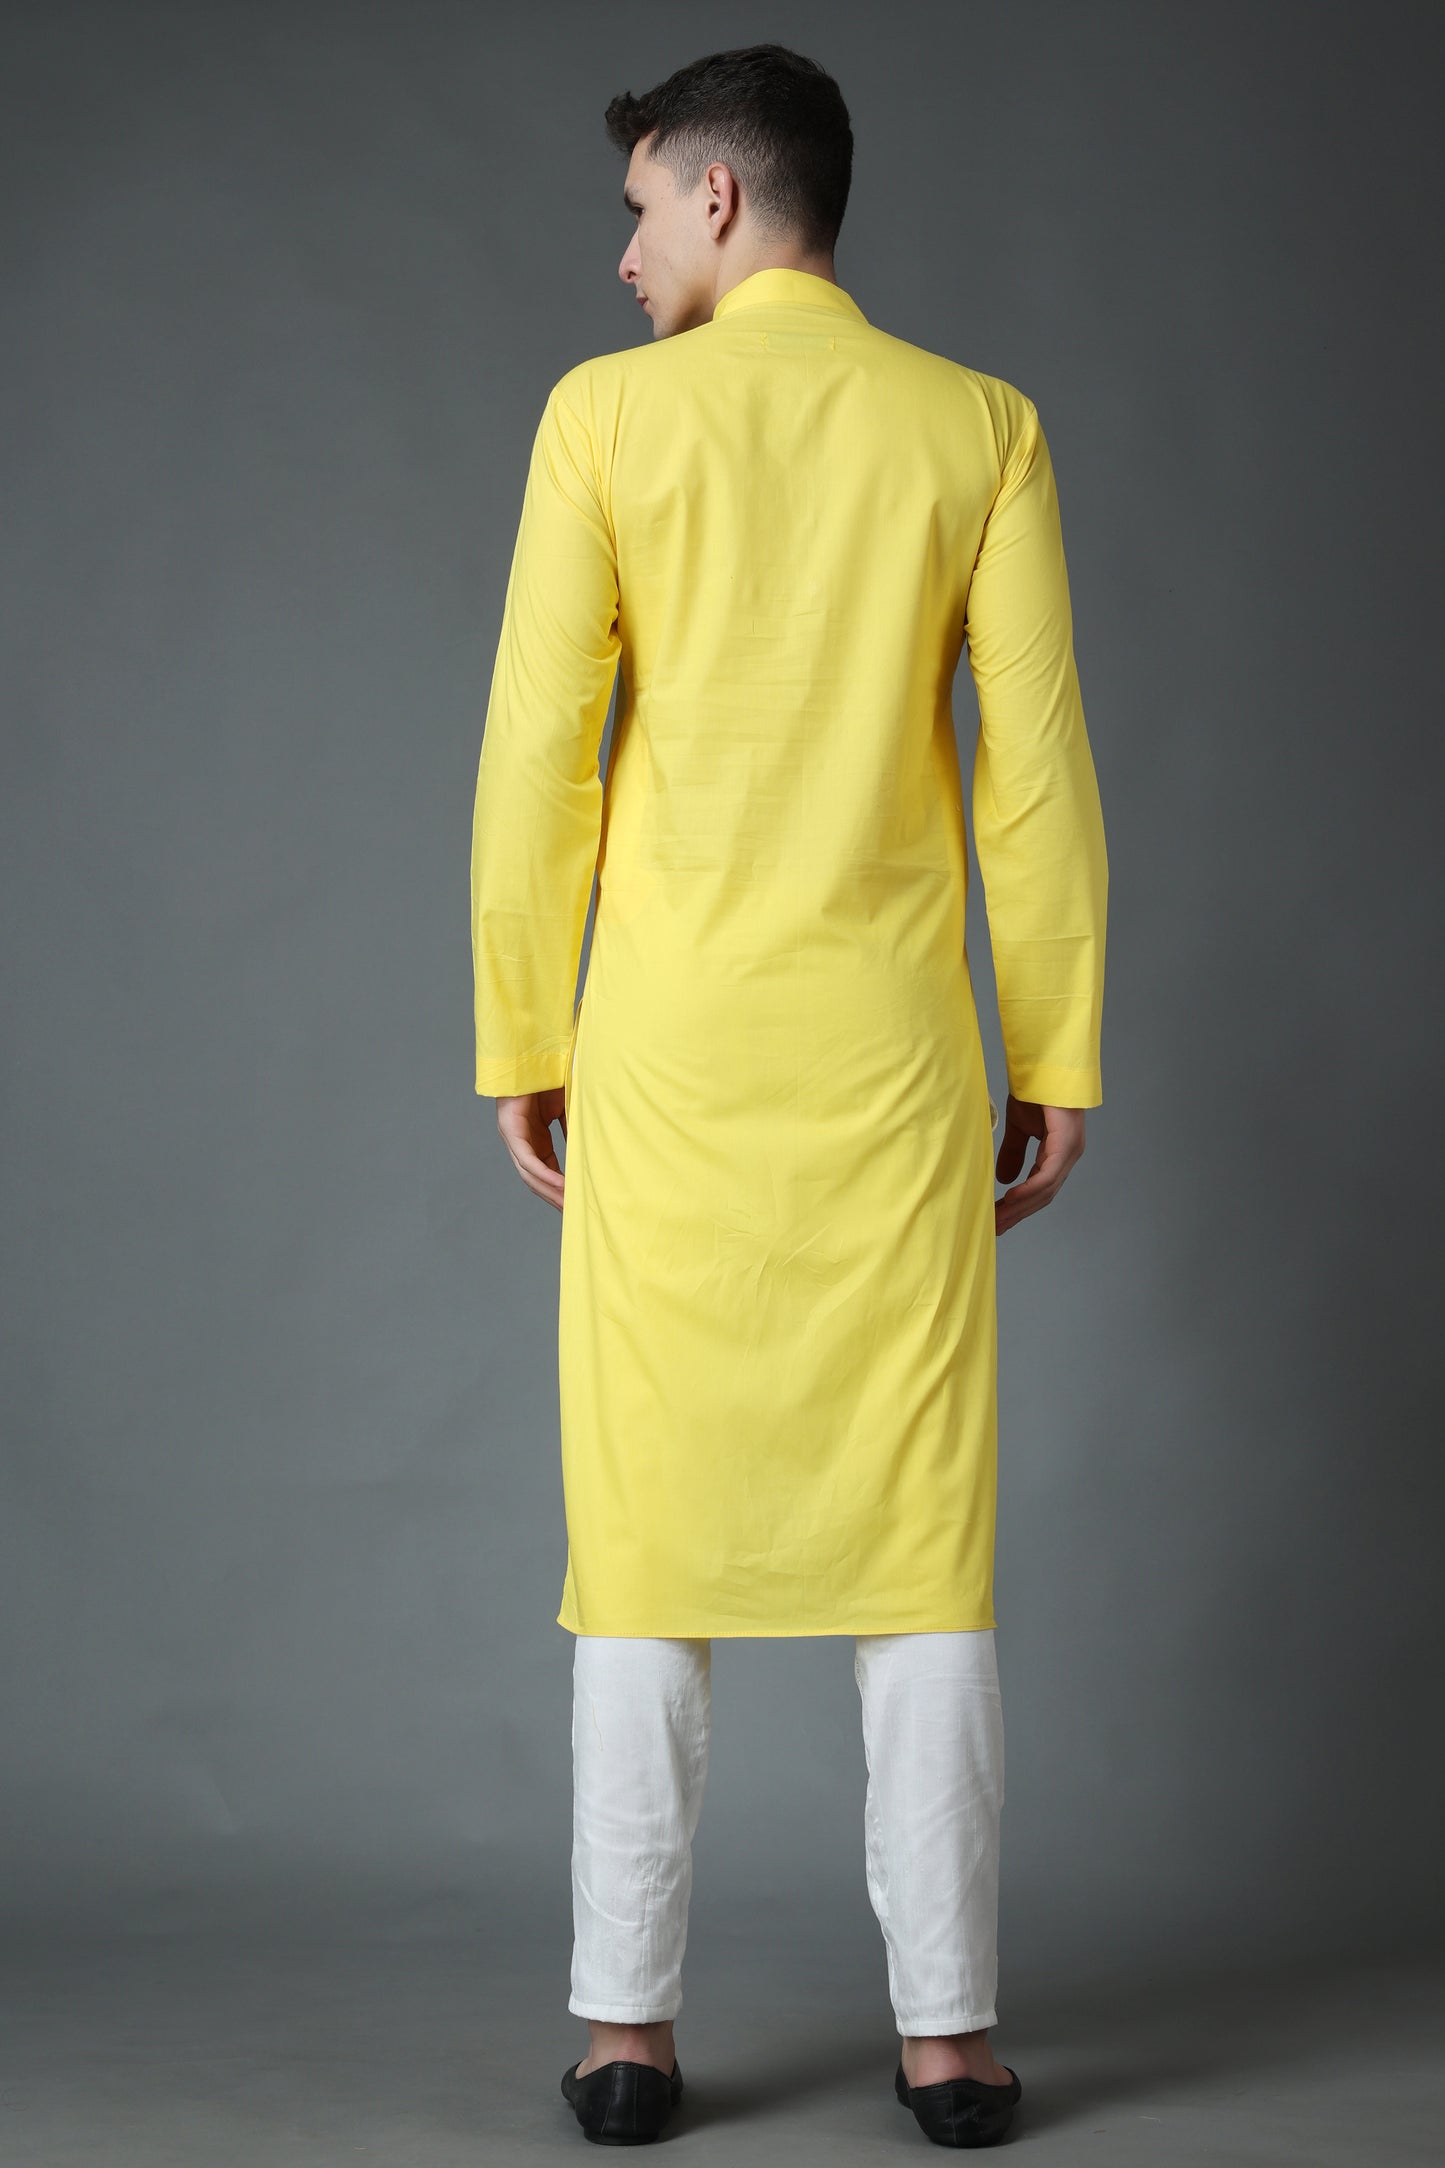 Men's Plus Size Subtle Yellow Cotton Kurta Pajama